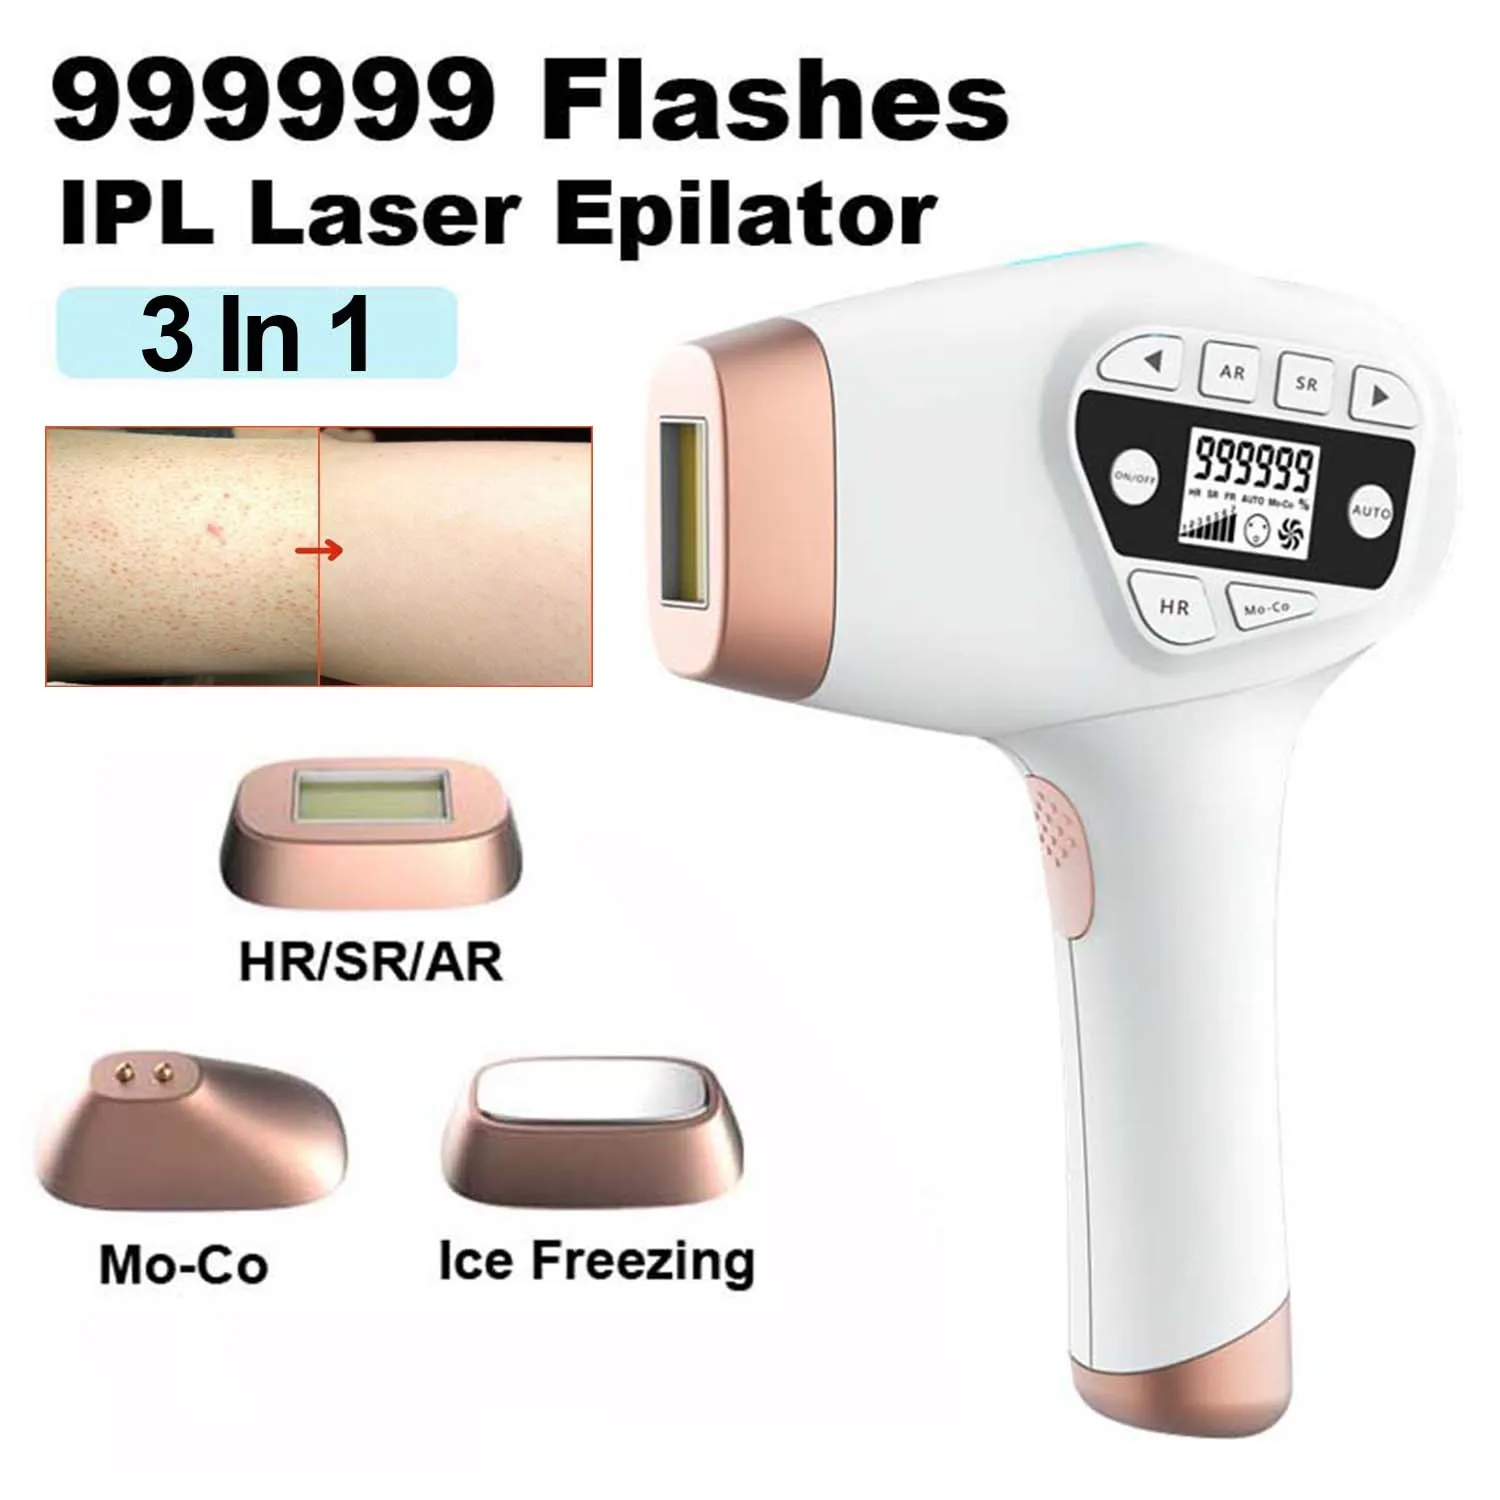 

Безболезненное лазерное устройство для удаления волос на лице бикини, 999999 вспышек, лазерный эпилятор